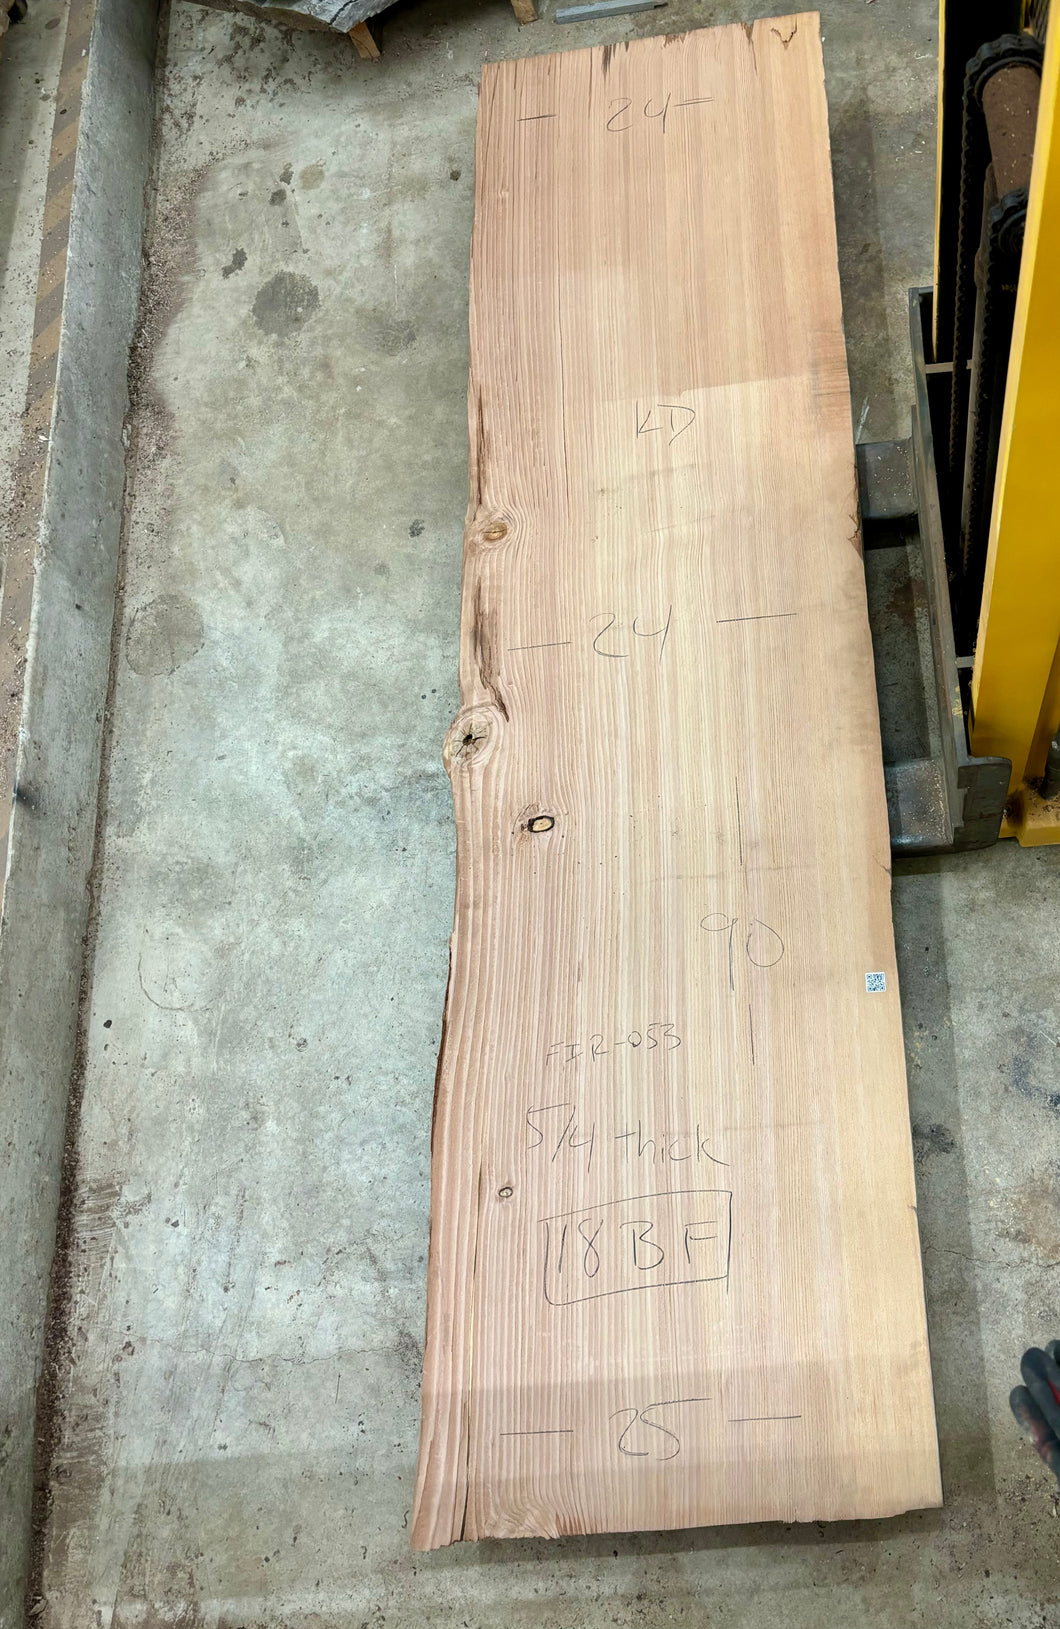 Old growth douglas fir slab FIR-053 salvaged from Exploratorium